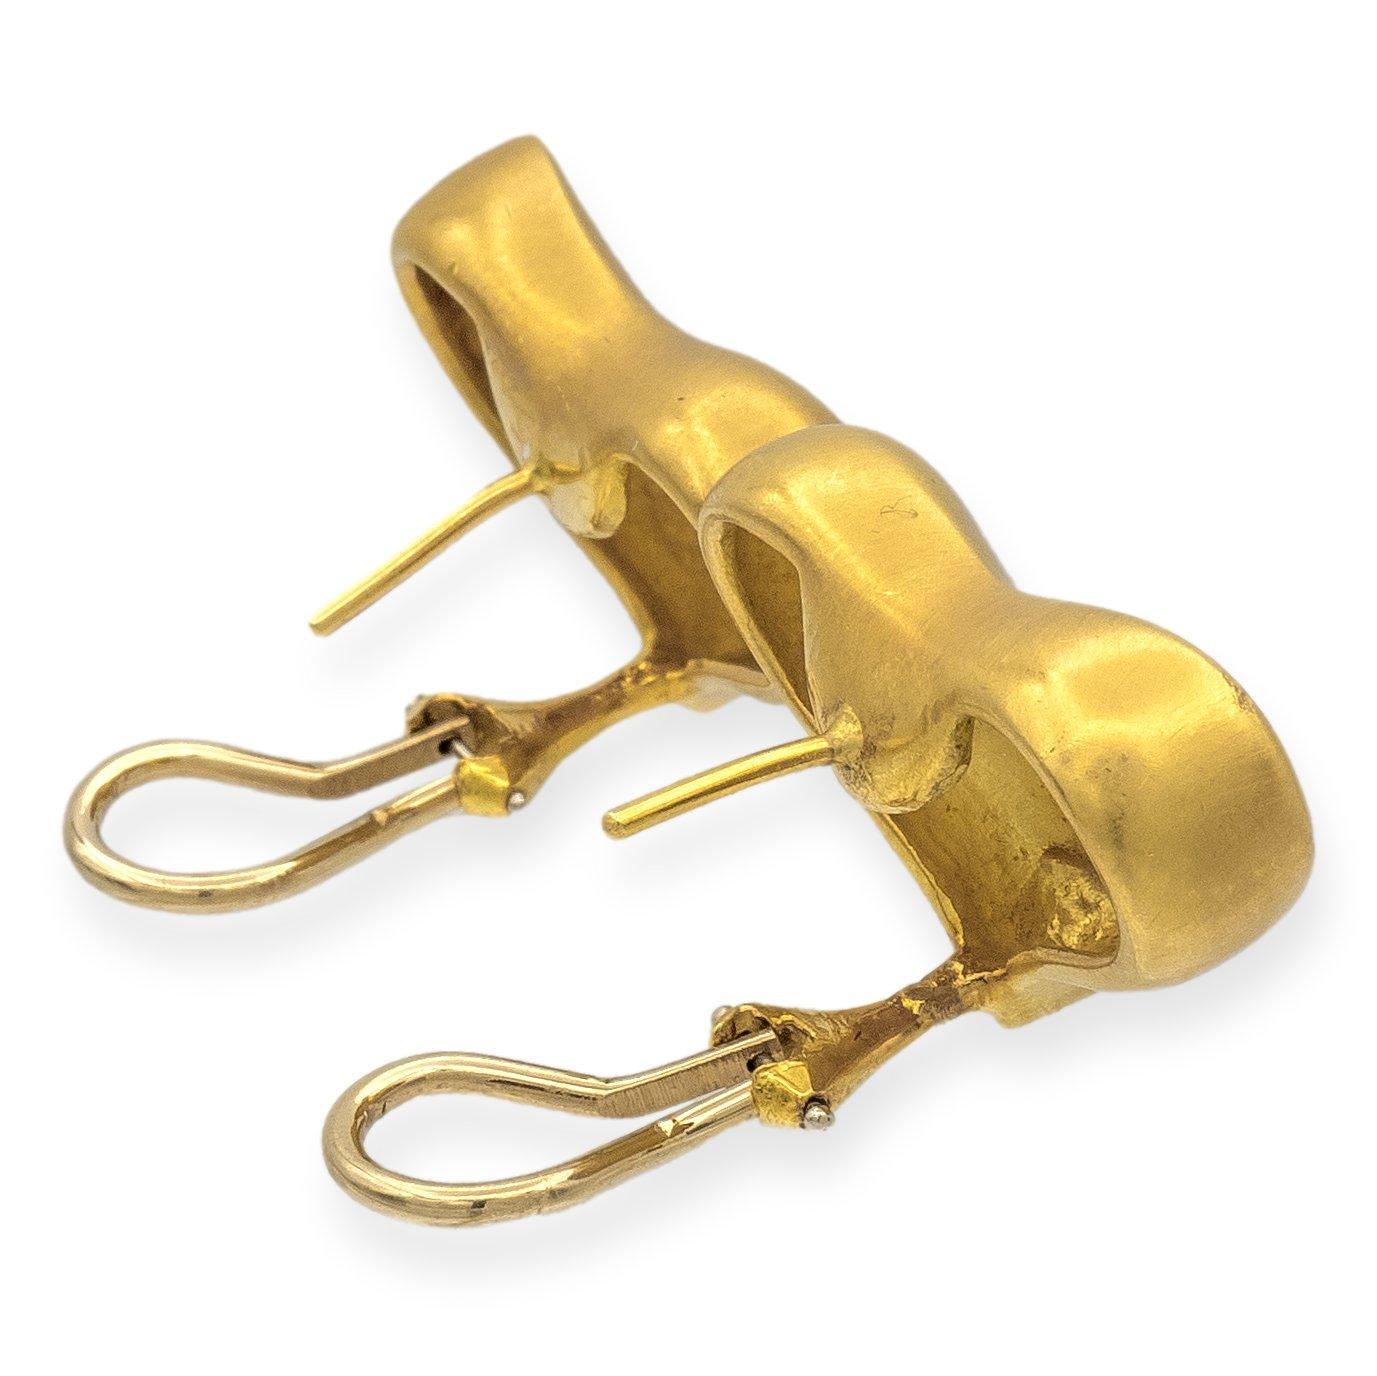 Les boucles d'oreilles Vintage Angela Cummings réalisées en 1985, méticuleusement travaillées en or jaune 18 carats avec des motifs de cœurs, ornées d'une finition en or satiné, exsudent un charme subtil. Les dos d'agrafe et les montants en oméga de